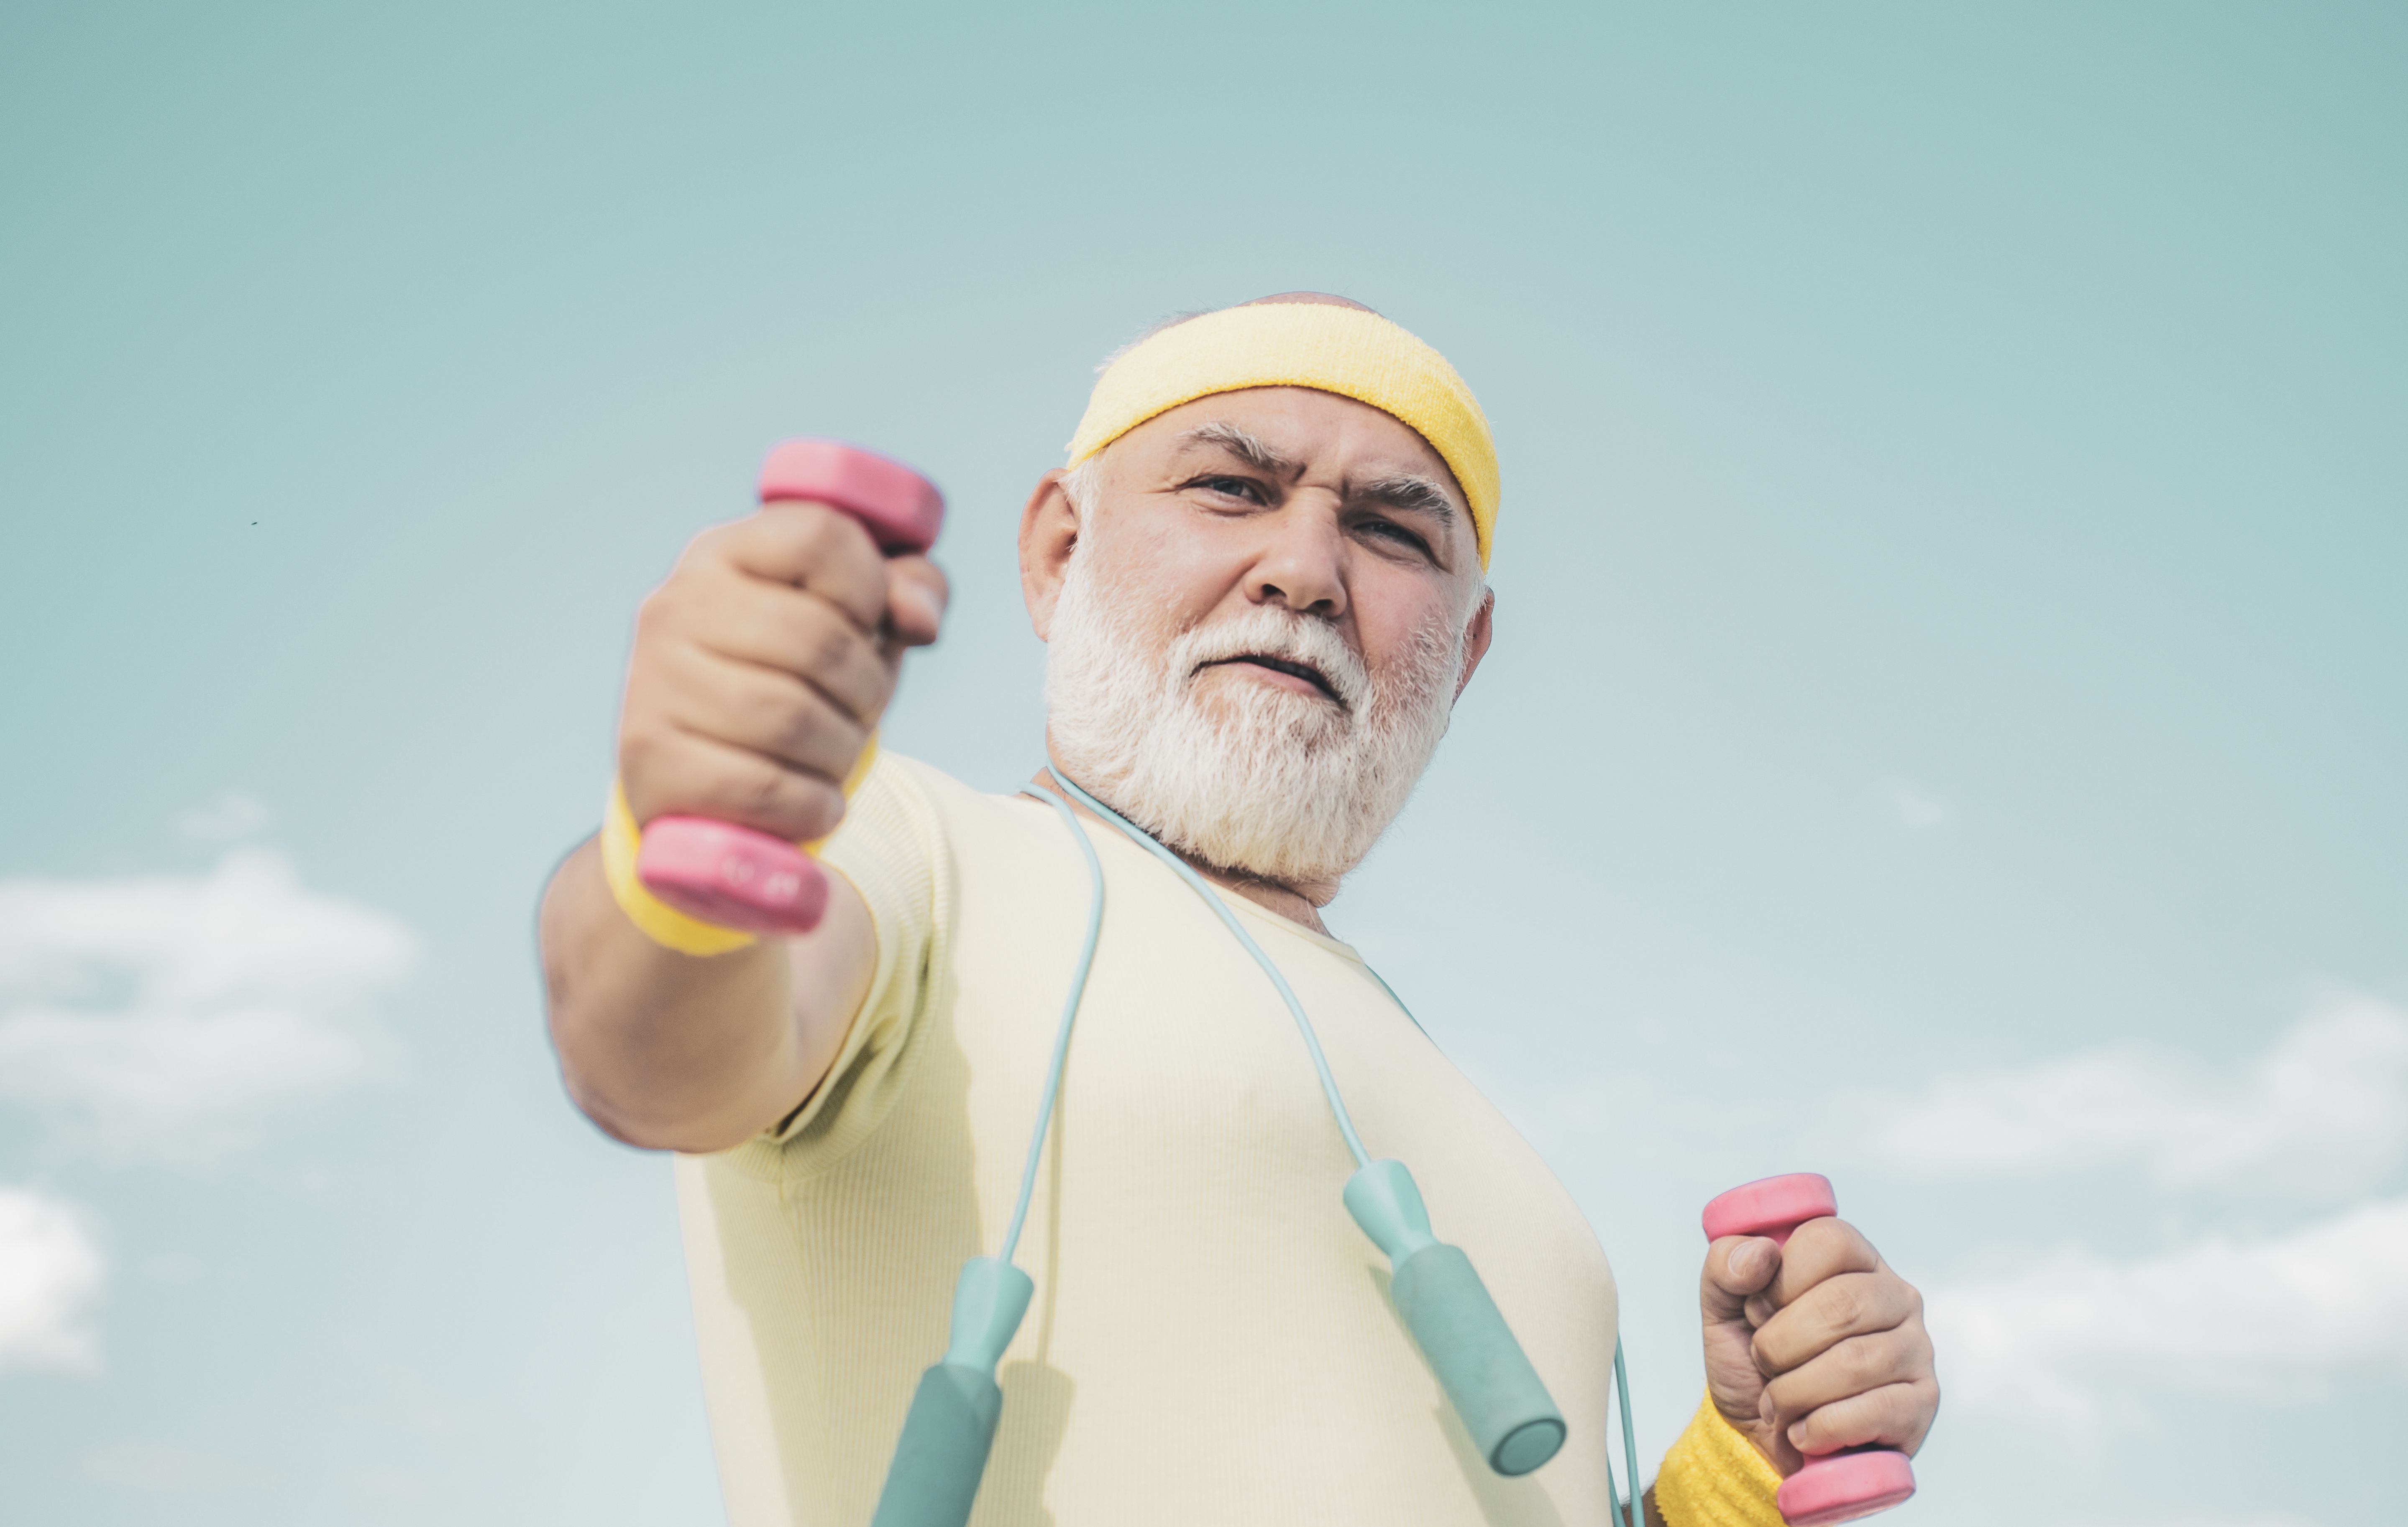 La actividad física puede ser más importante que los genes para la longevidad, según un estudio. Foto: Bigstock